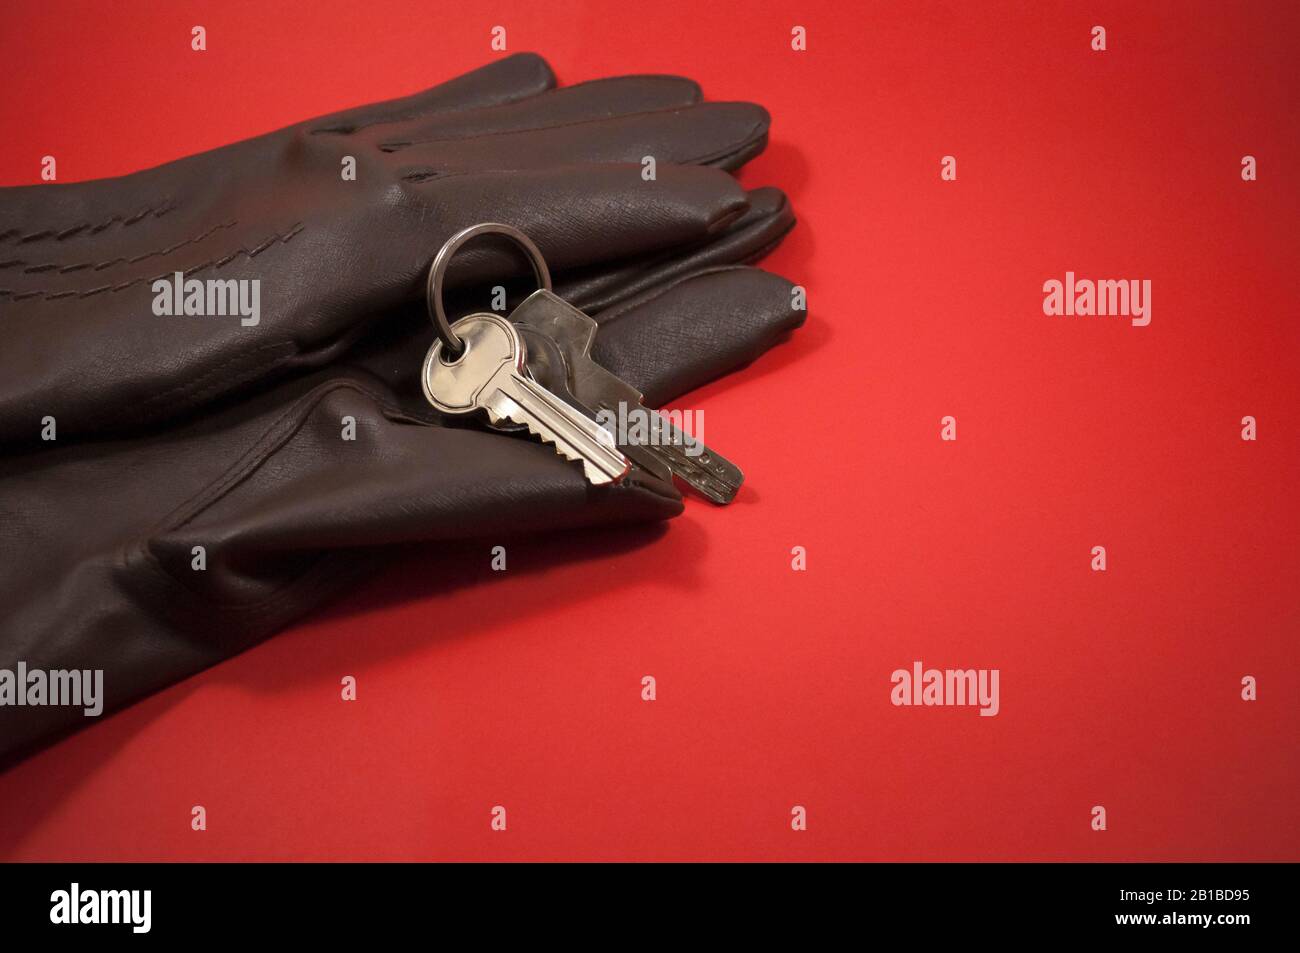 muestra guantes y teclas sobre un fondo rojo, con espacio para texto Foto de stock